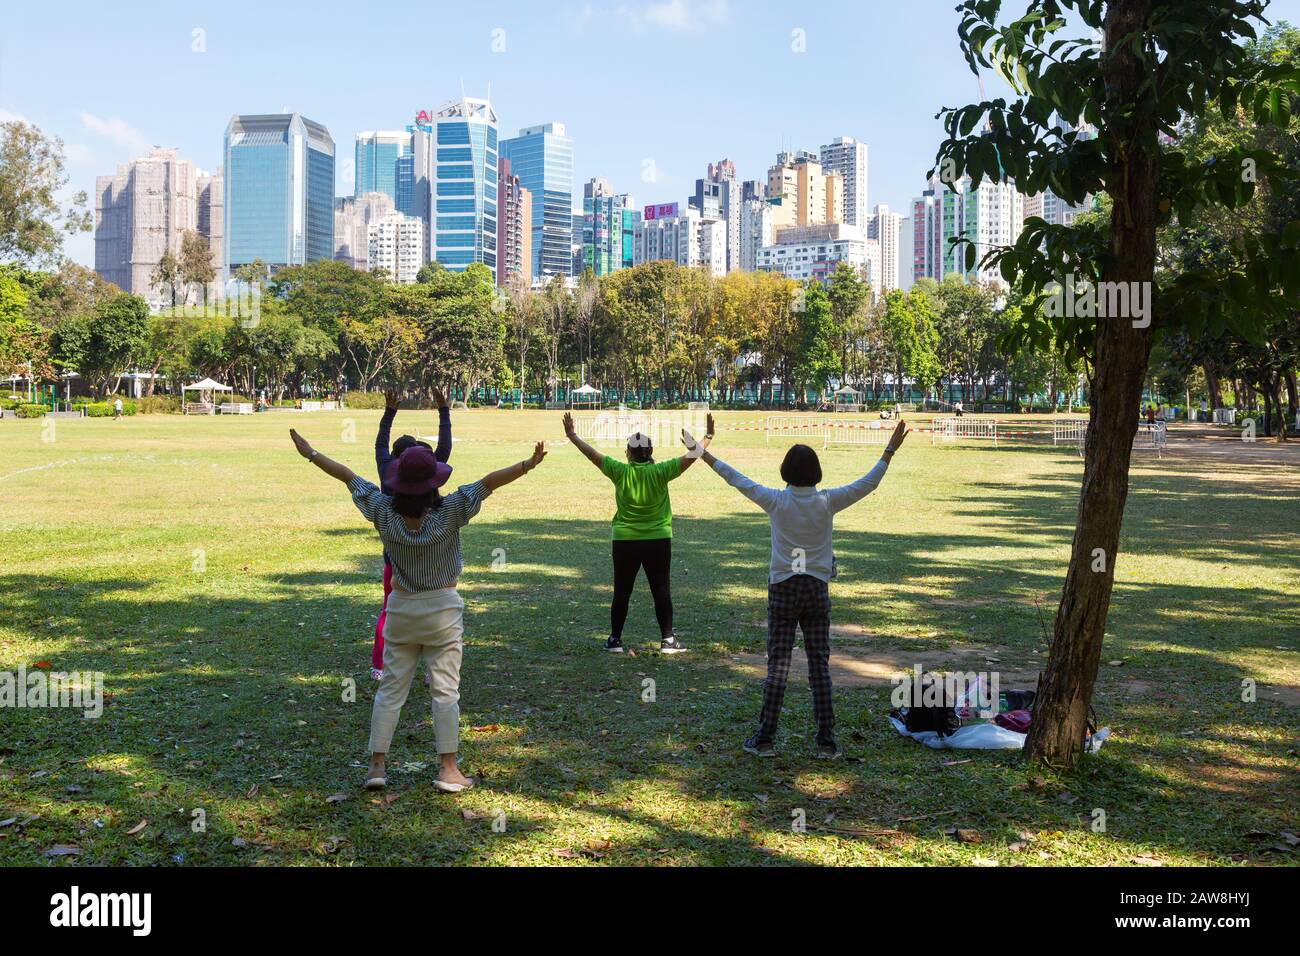 Tai Chi Asia; Gruppe lokaler Menschen mittleren Alters, die Tai-Chi-Übungen im Victoria-Park, Hong Kong Island Hongkong, Asien, durchführen; Beispiel; asiatischer Lebensstil Stockfoto